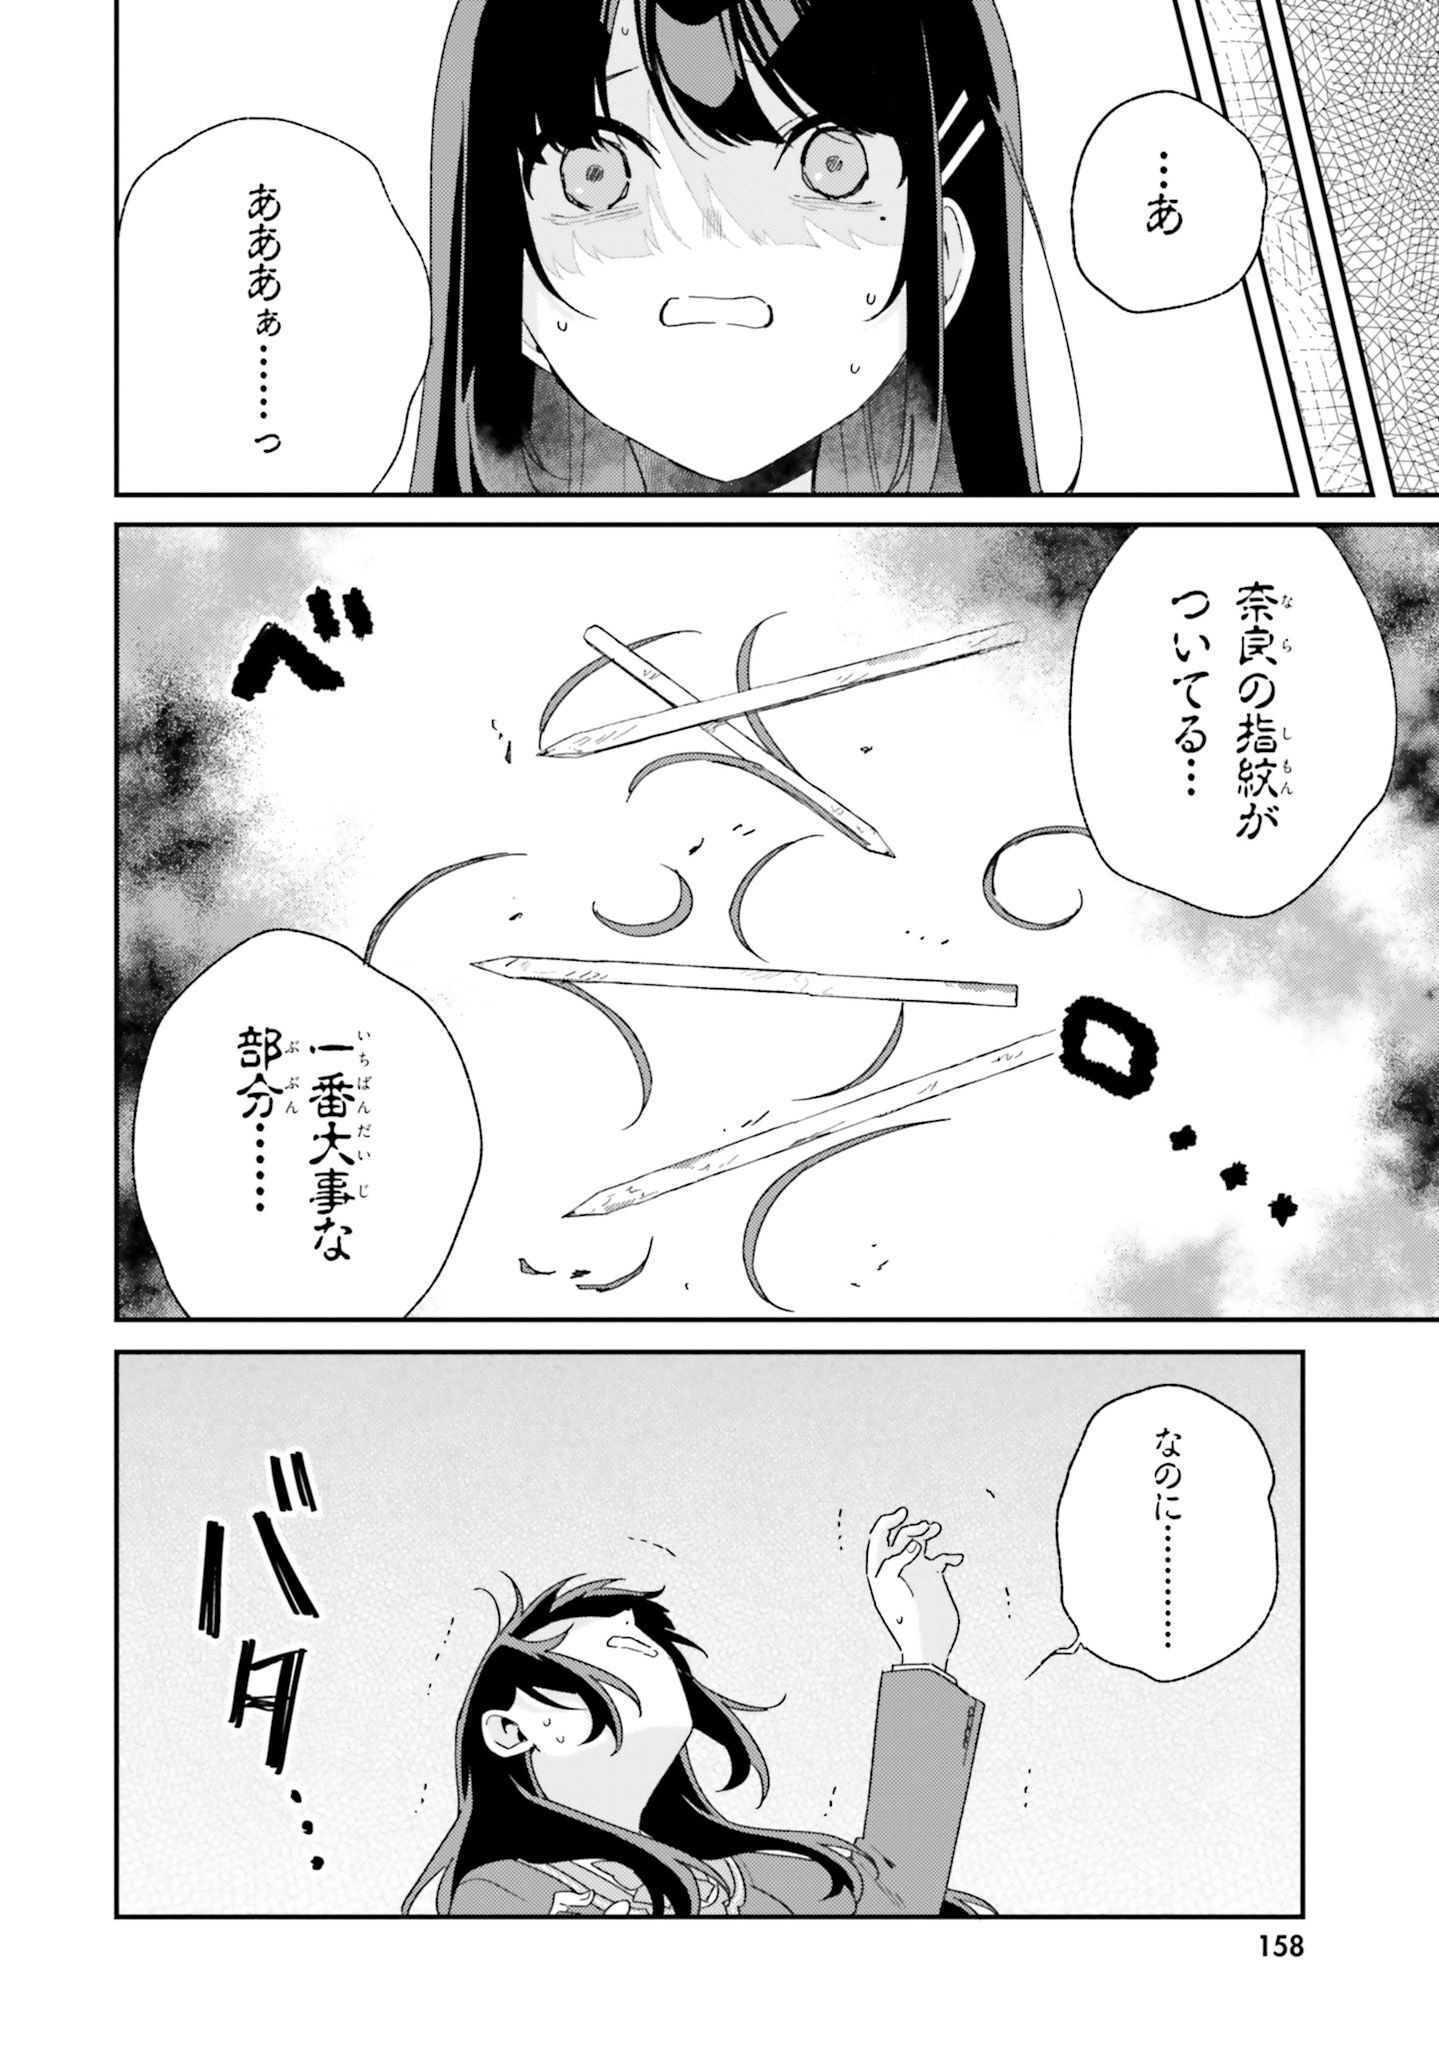 Umidori Tougetsu no Detarame na Jijou - Chapter 4 - Page 30